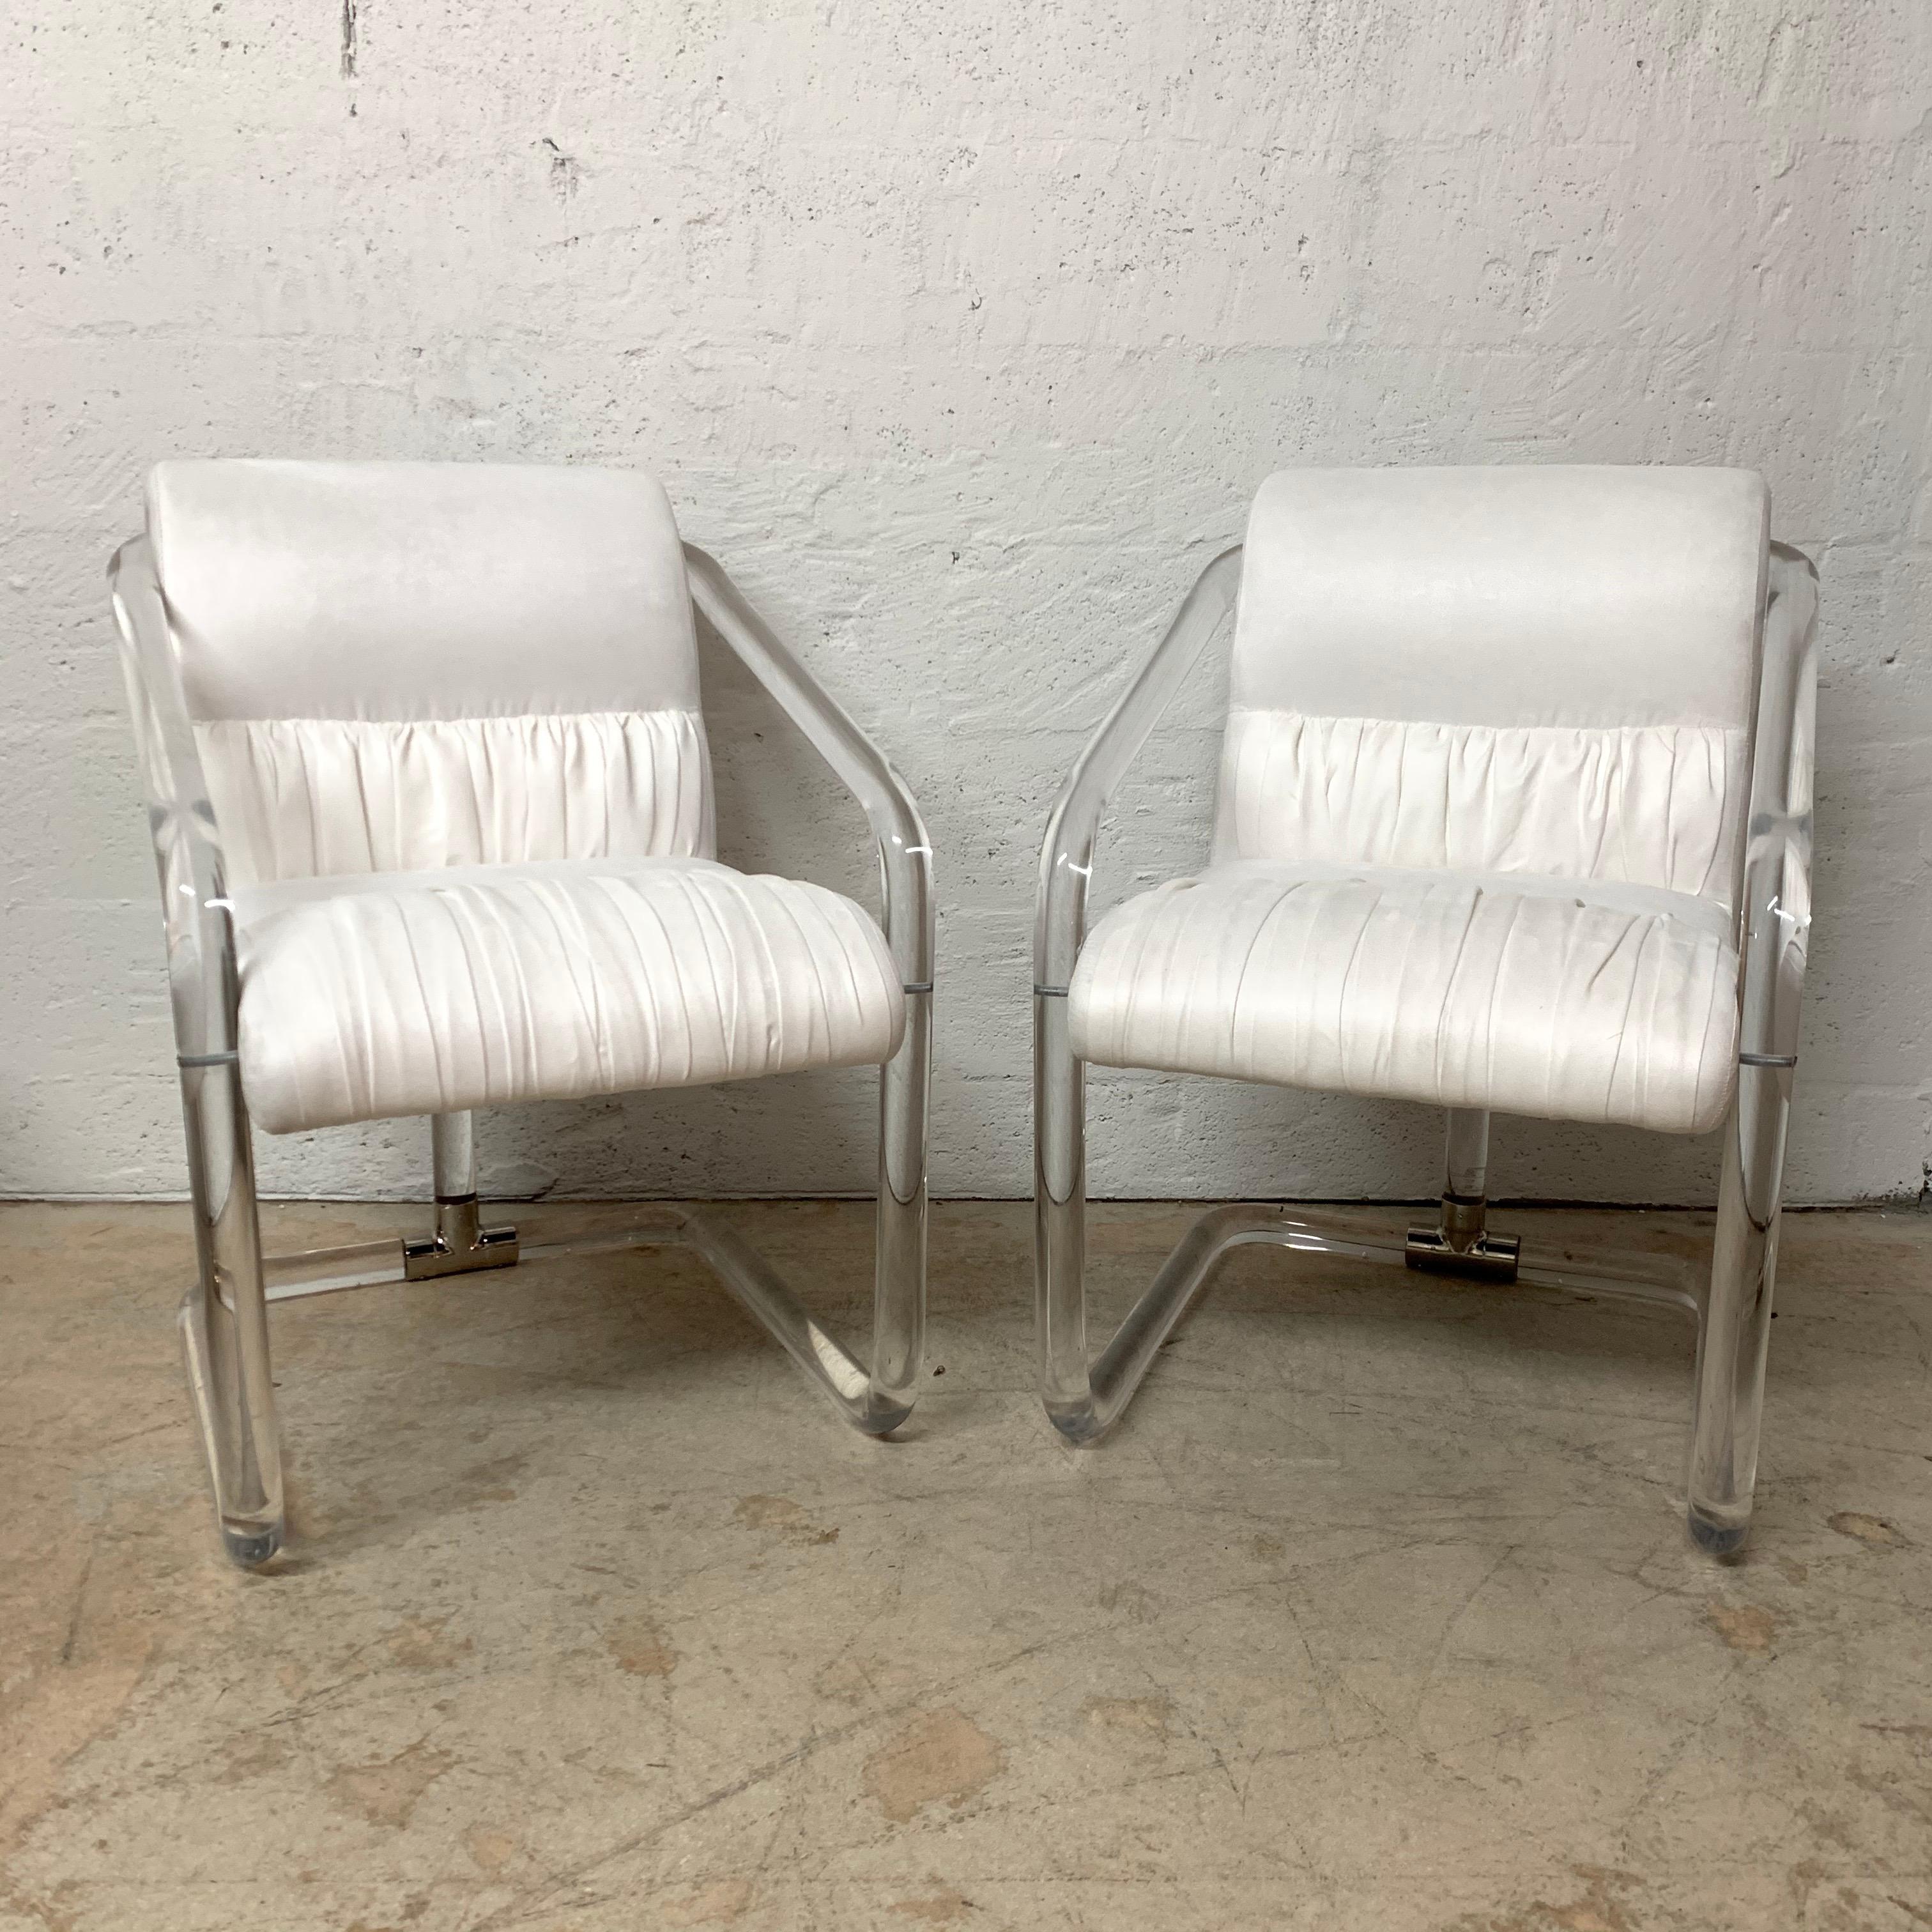 Paire de chaises polyvalentes au cadre en Lucite tubulaire plié avec des accessoires en nickel et tapissées de tissu ultra-daim blanc ivoire crémeux, signées, États-Unis, années 1970.